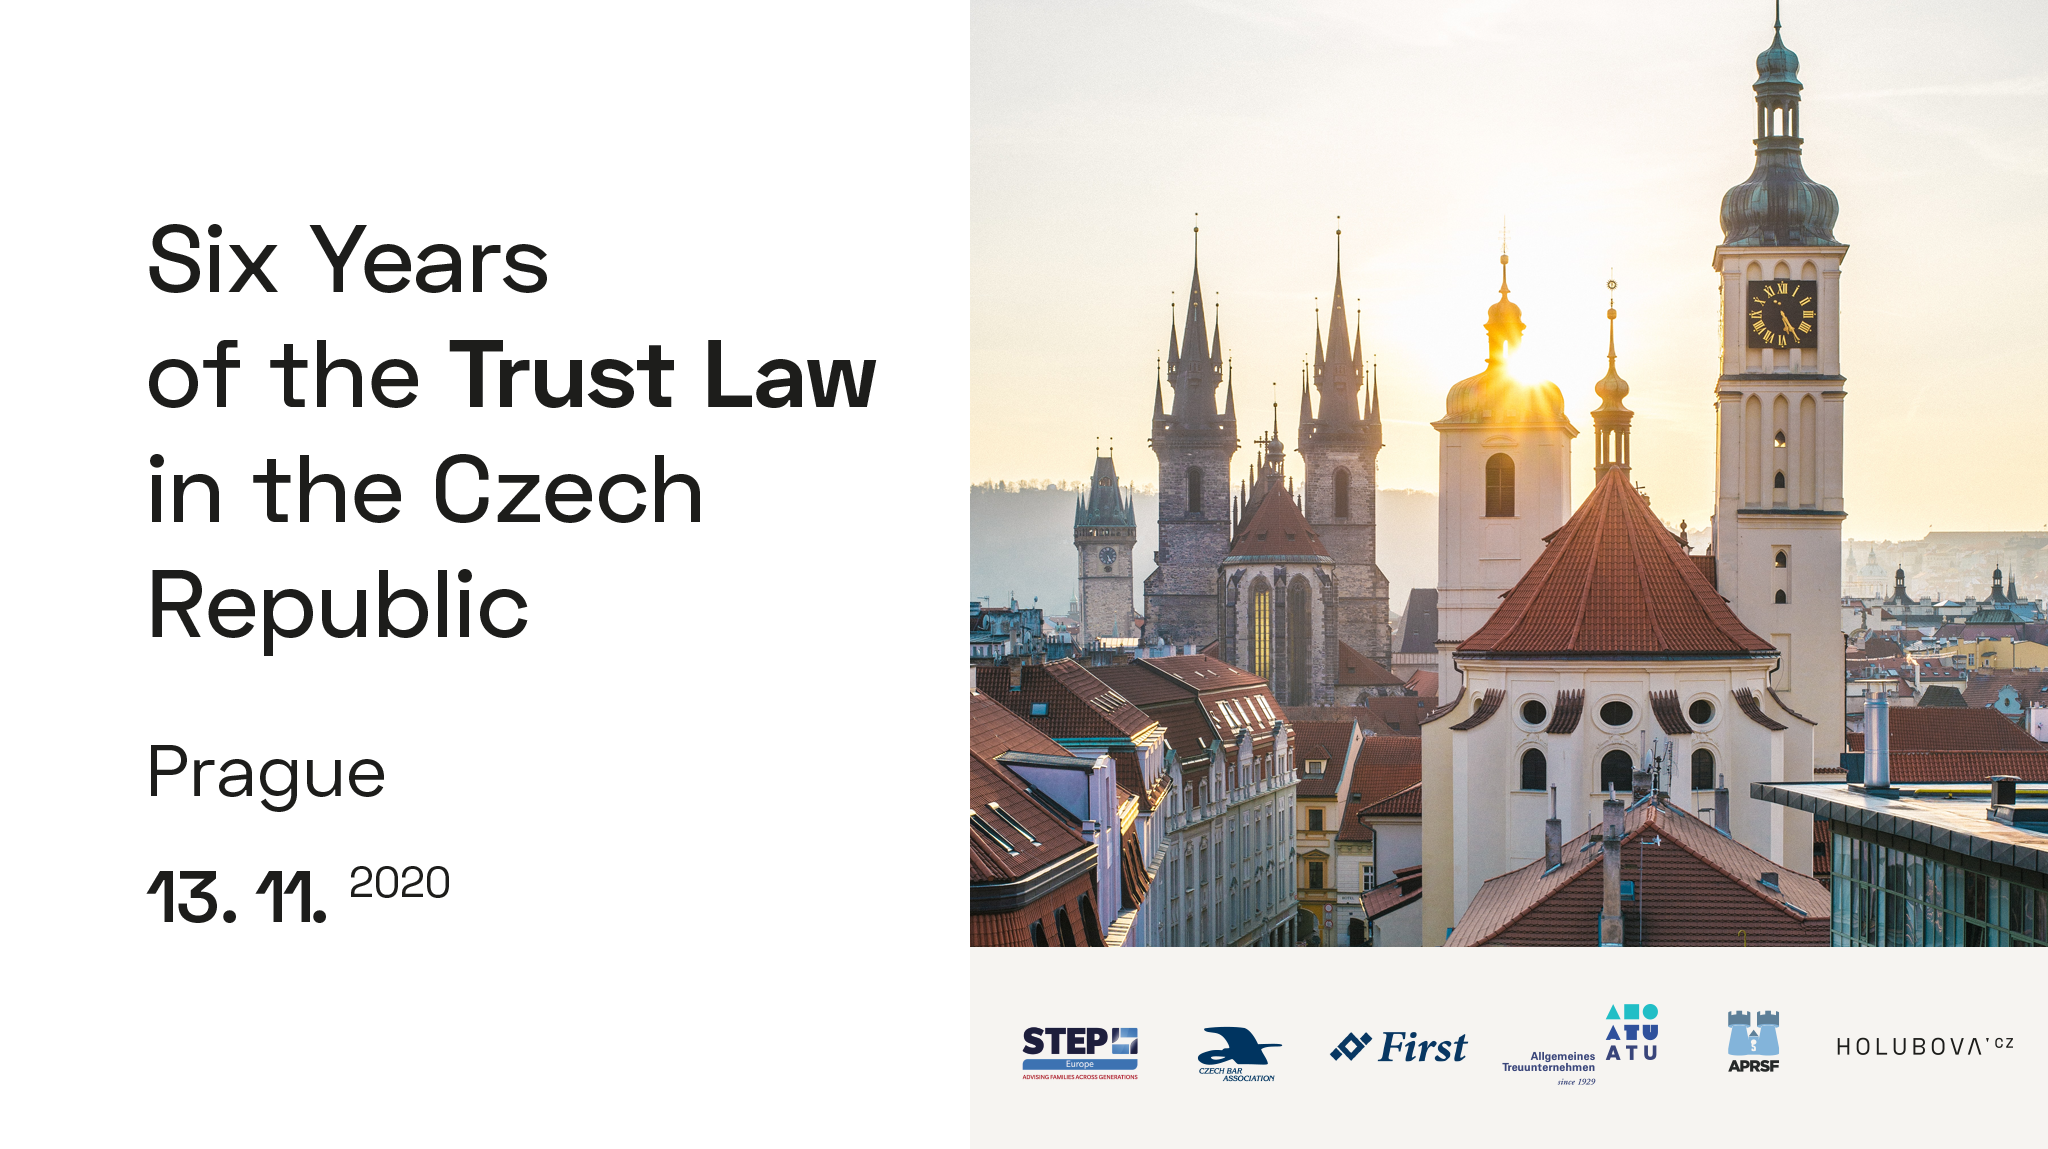 Šest let svěřenských fondů v českém právním systému – Svěřenské fondy v praxi a mezinárodní srovnání